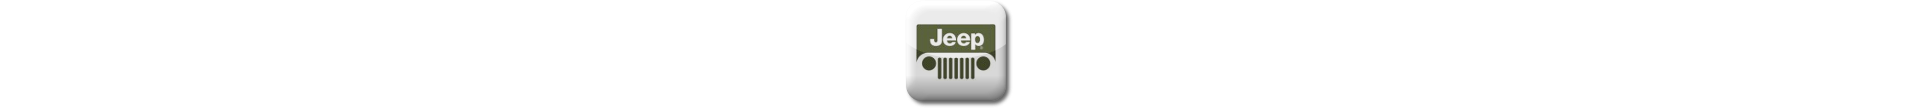 Boitier additionnel Jeep Diesel Evolussem